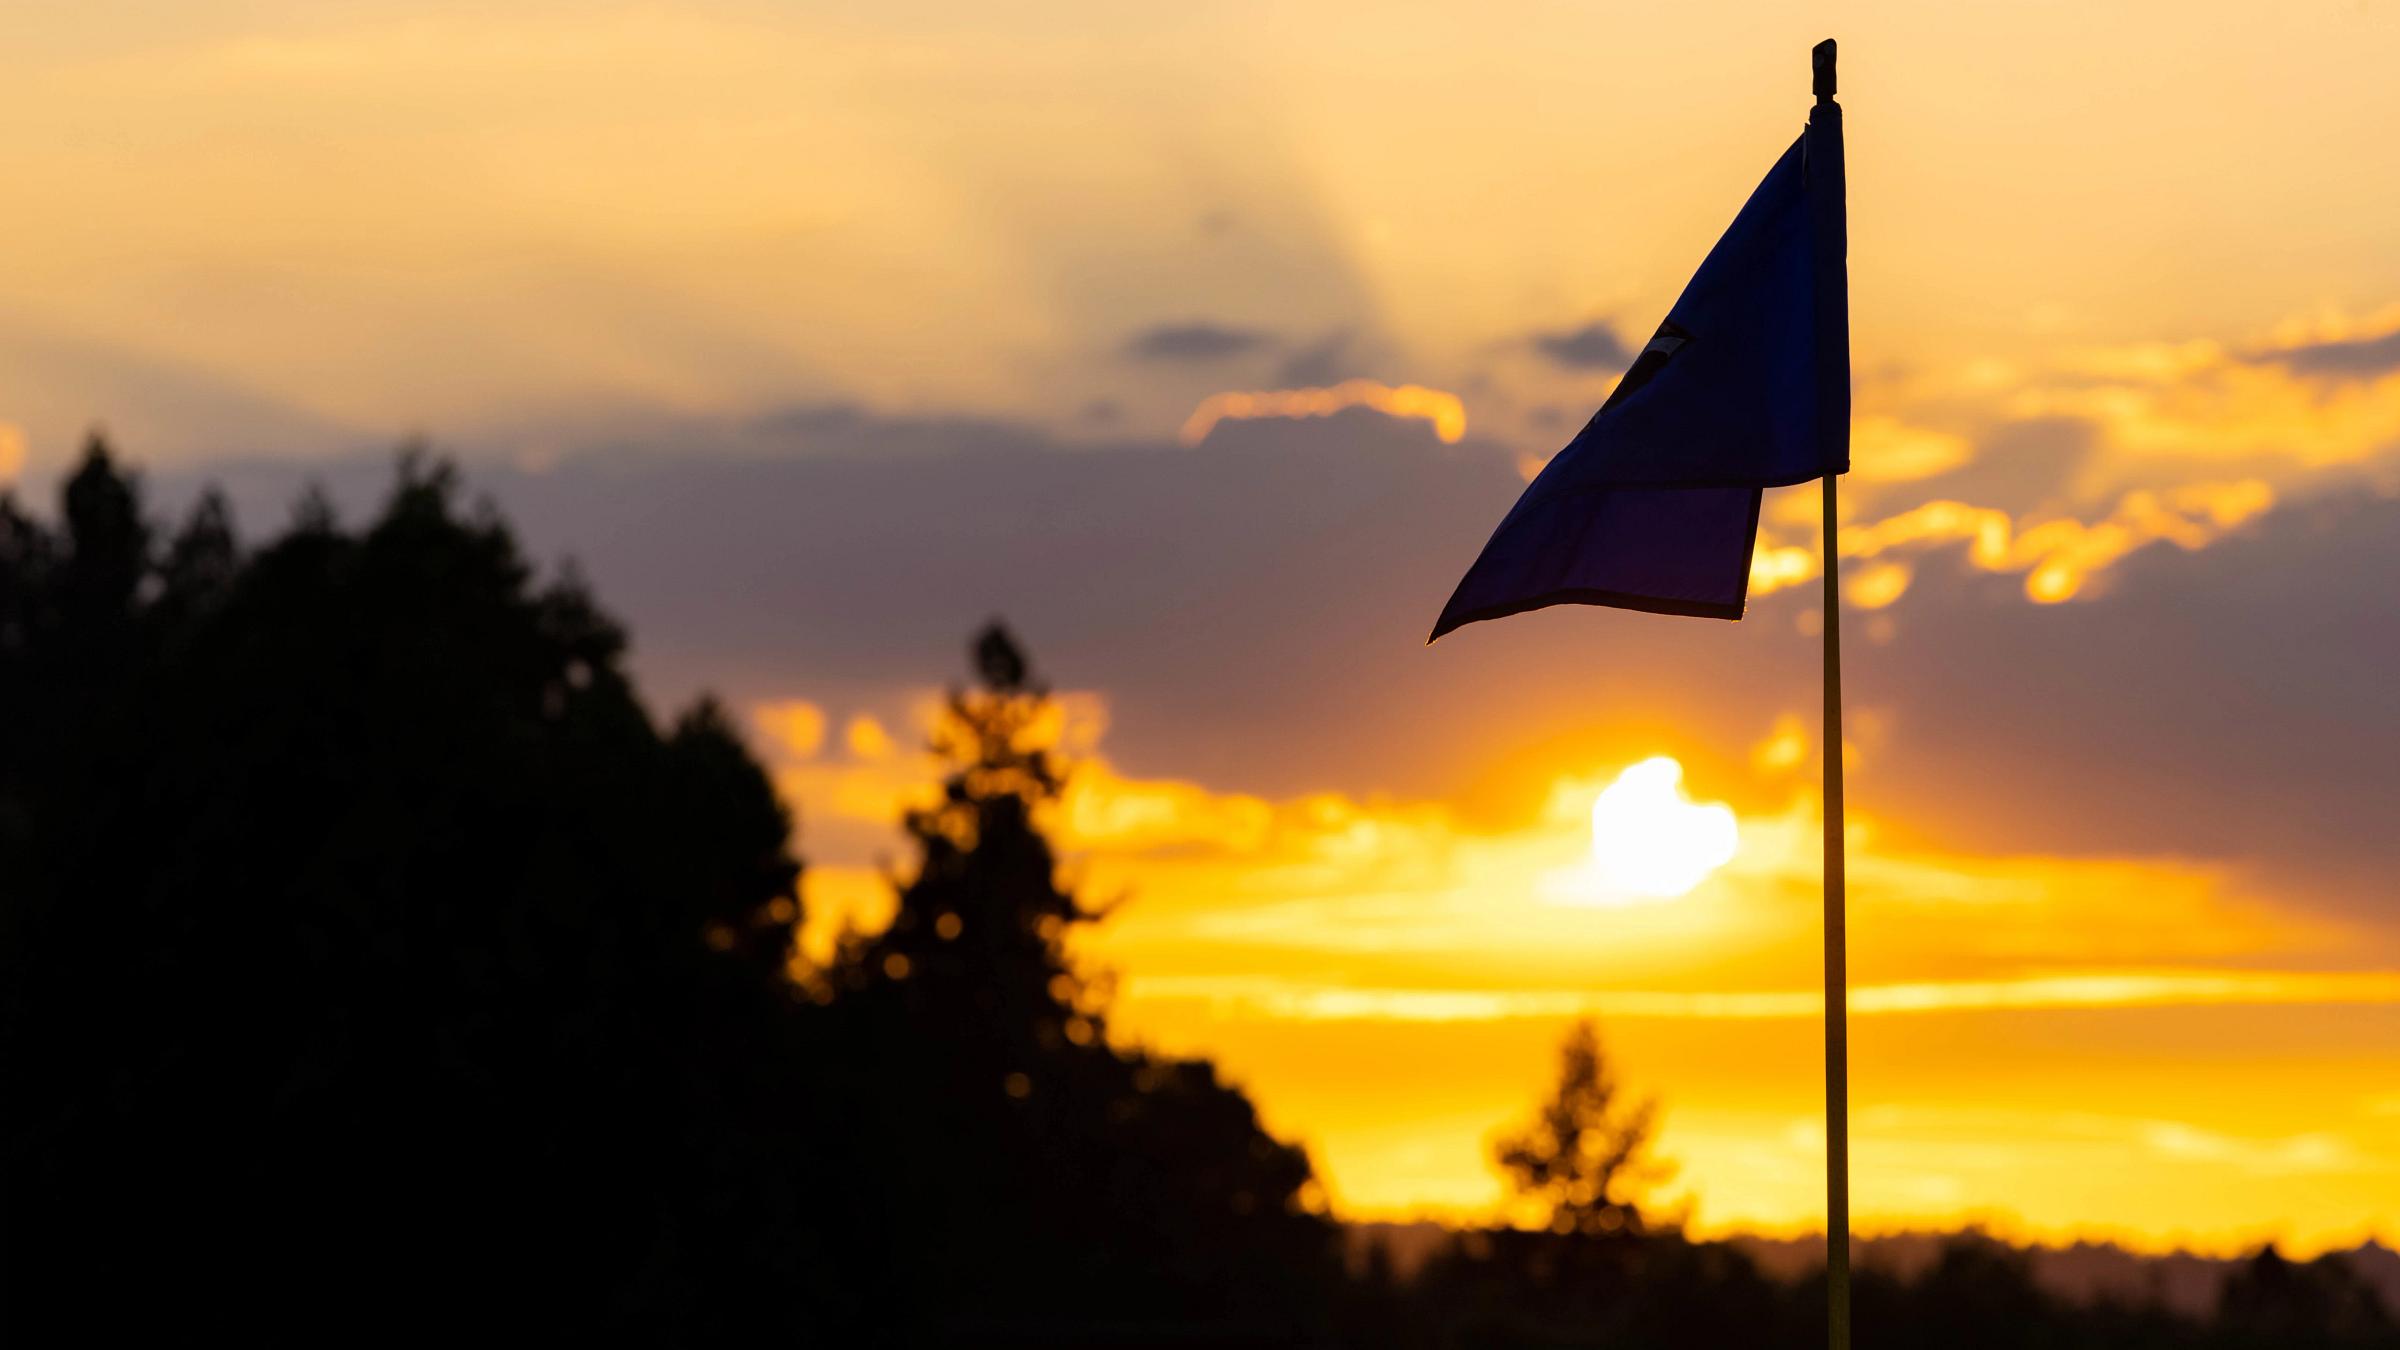 Flag silhouette against a sunset sky